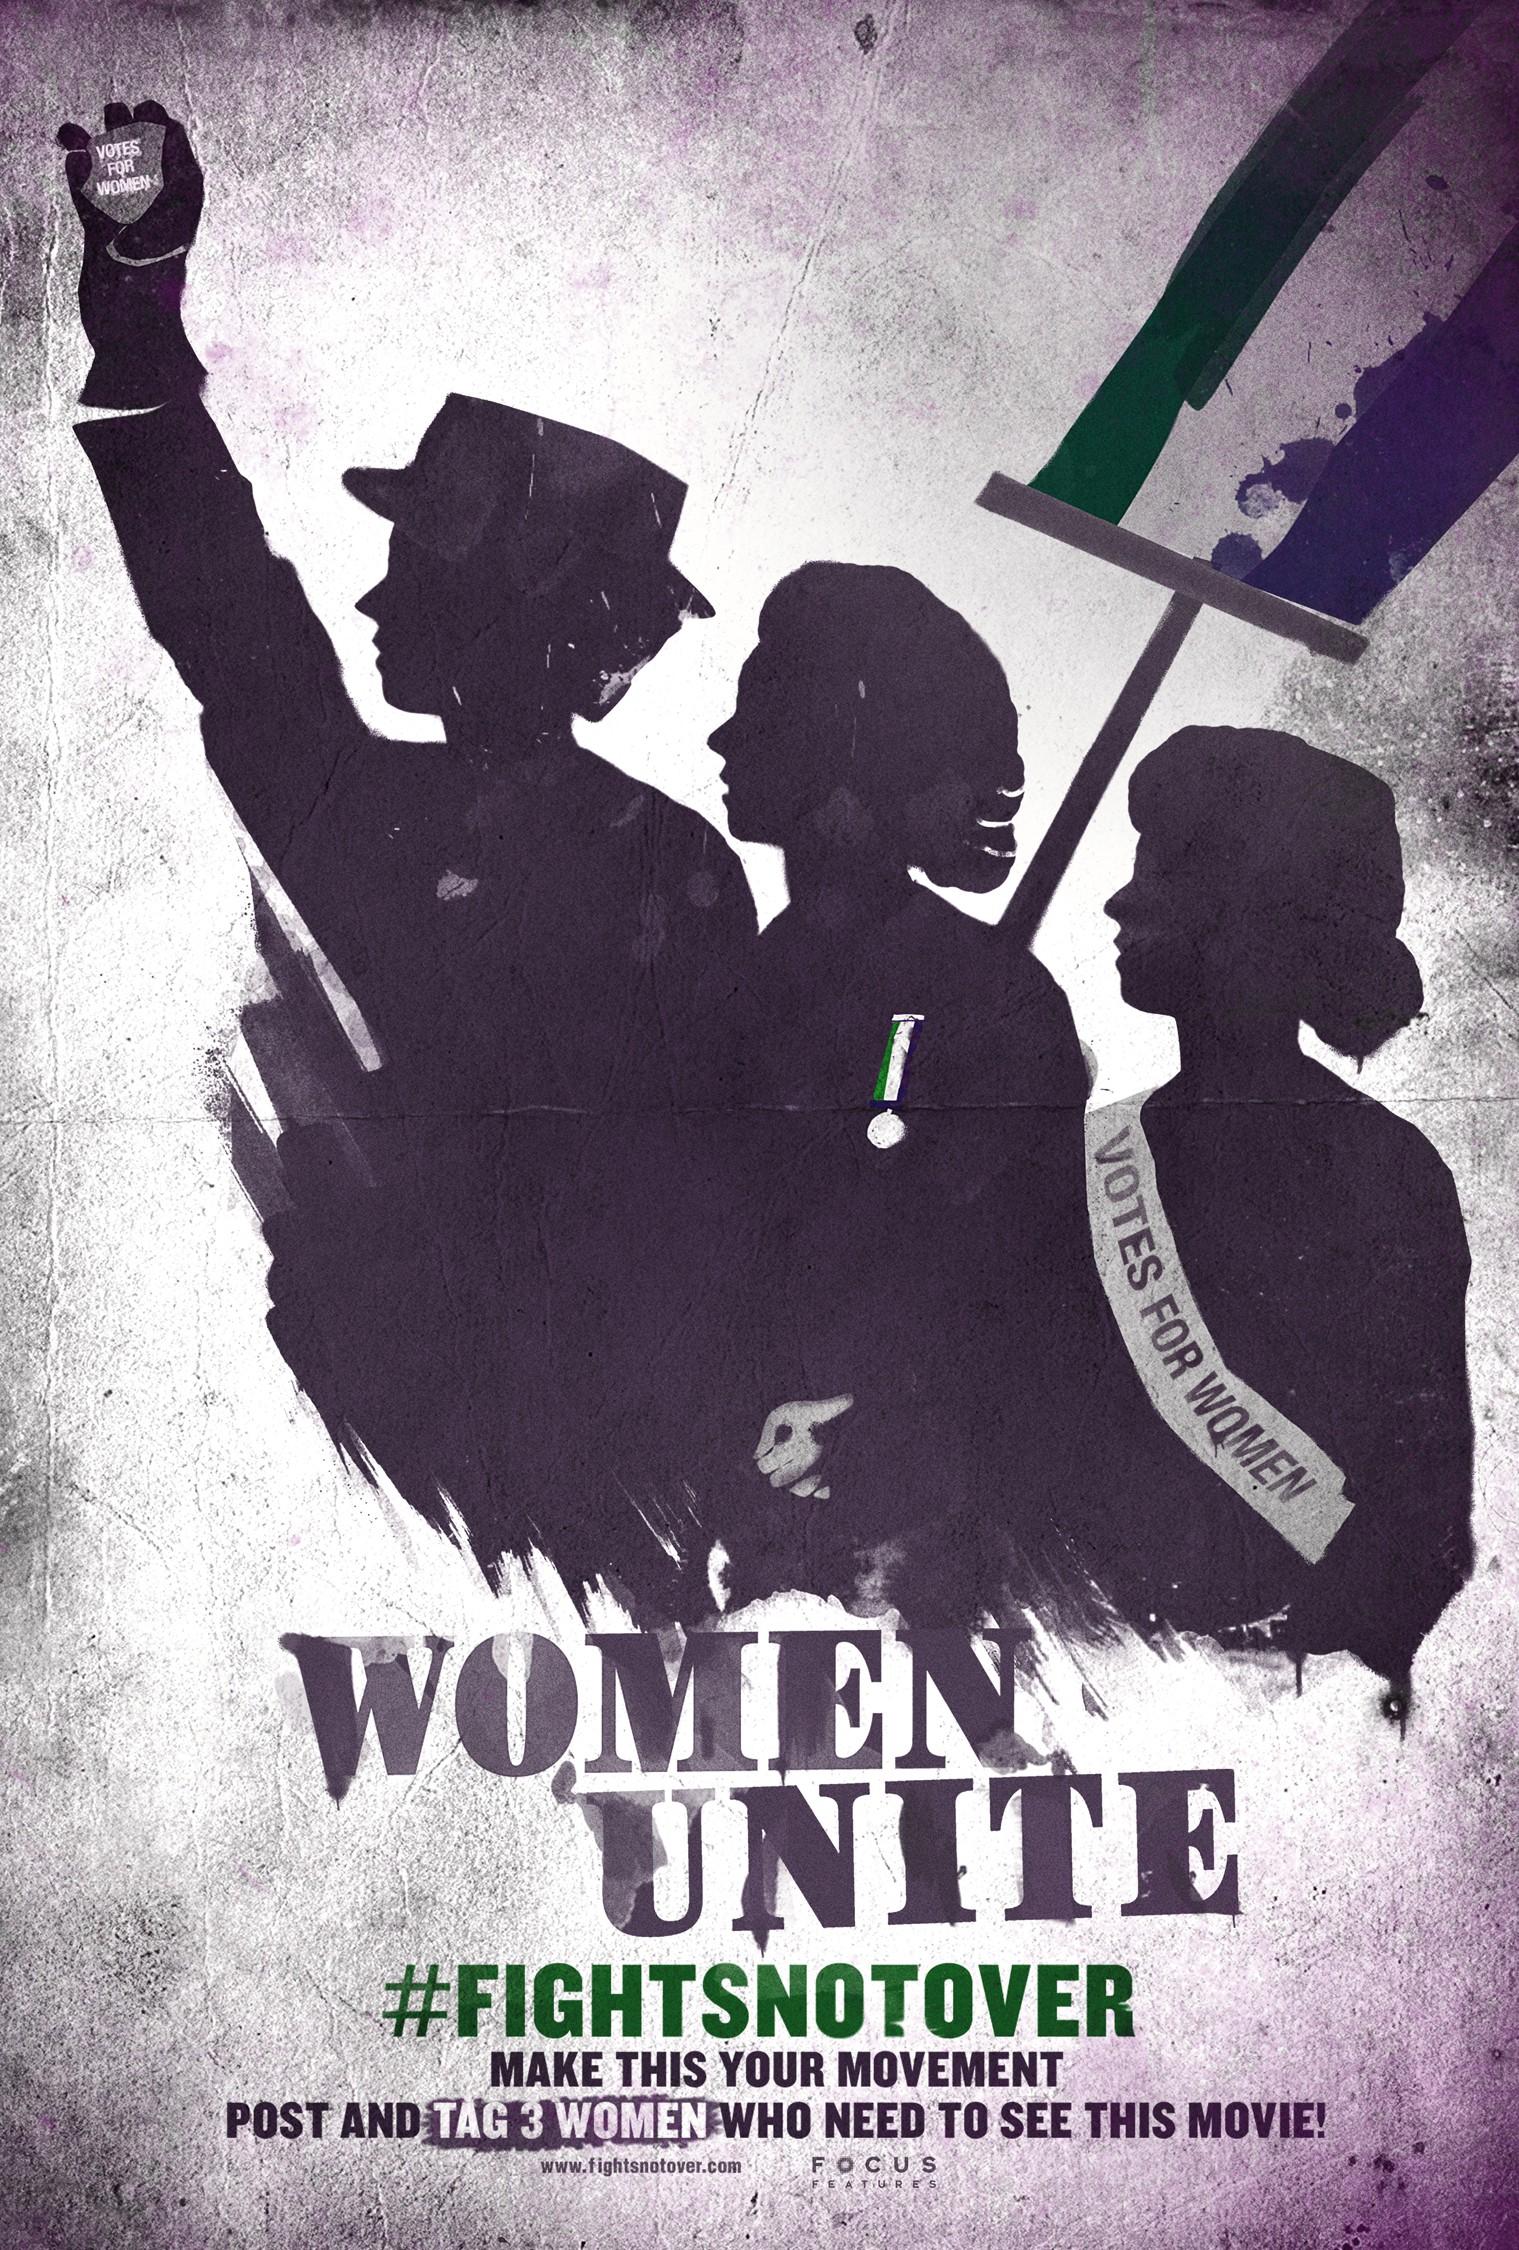 Постер фильма Суфражистка | Suffragette